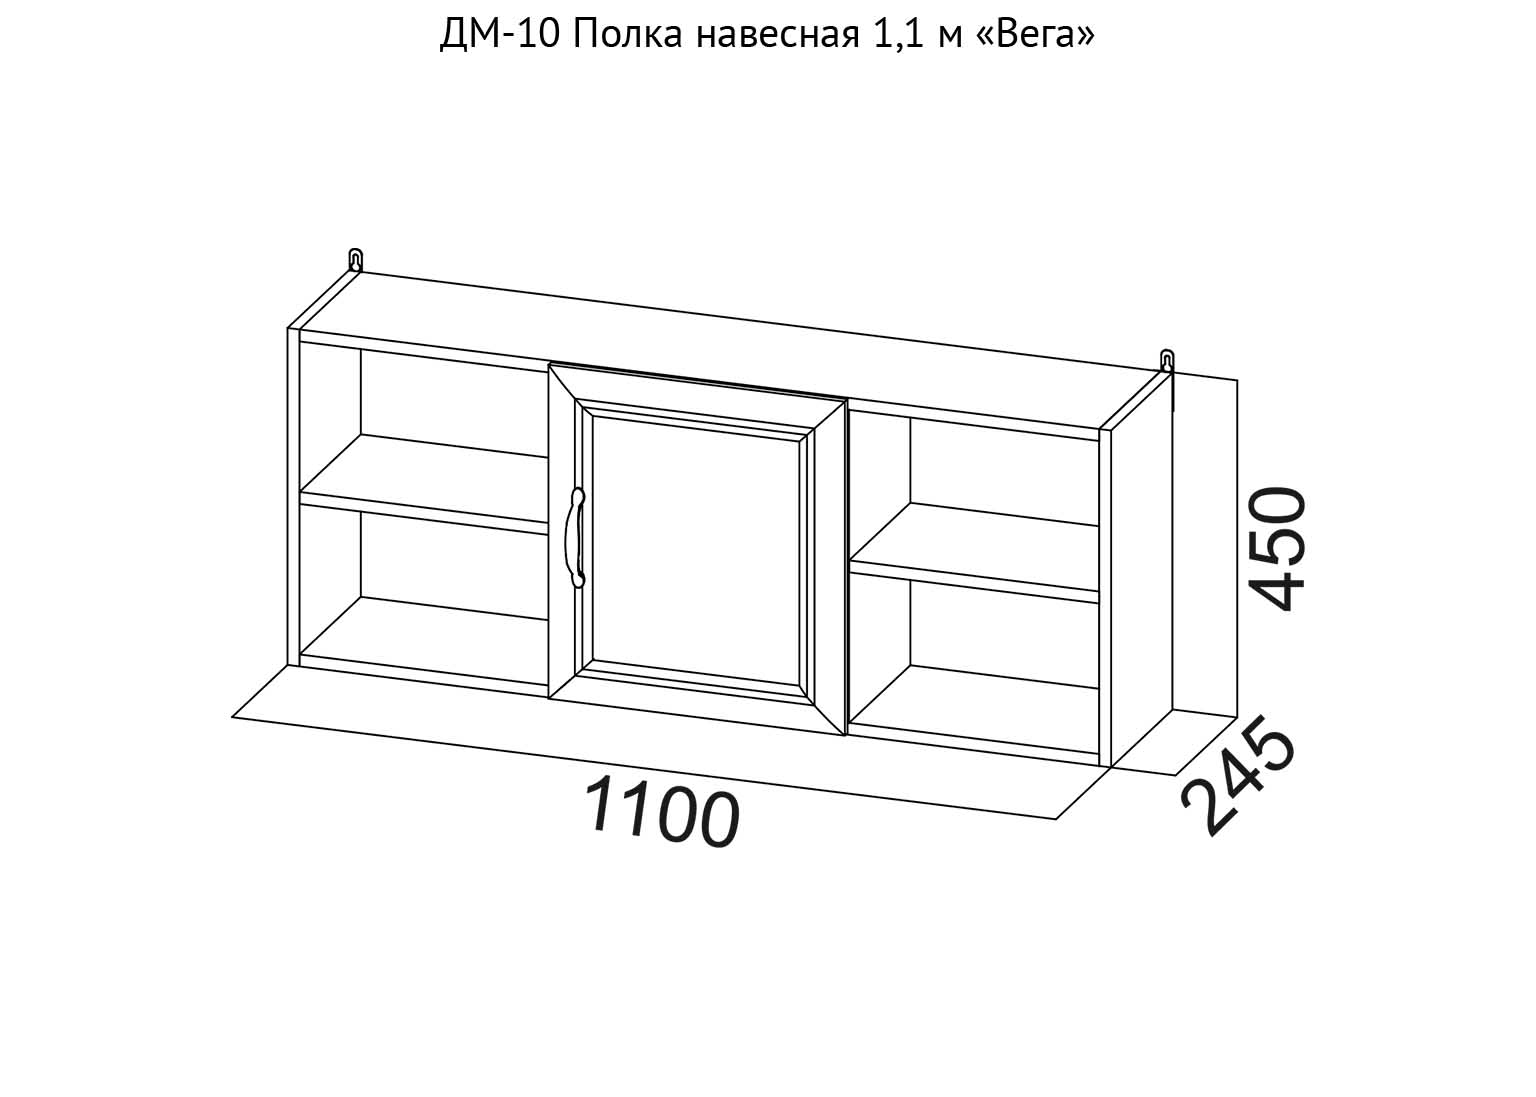 ДМ-10 Полка навесная 1,1 м Вега схема SV-Мебель